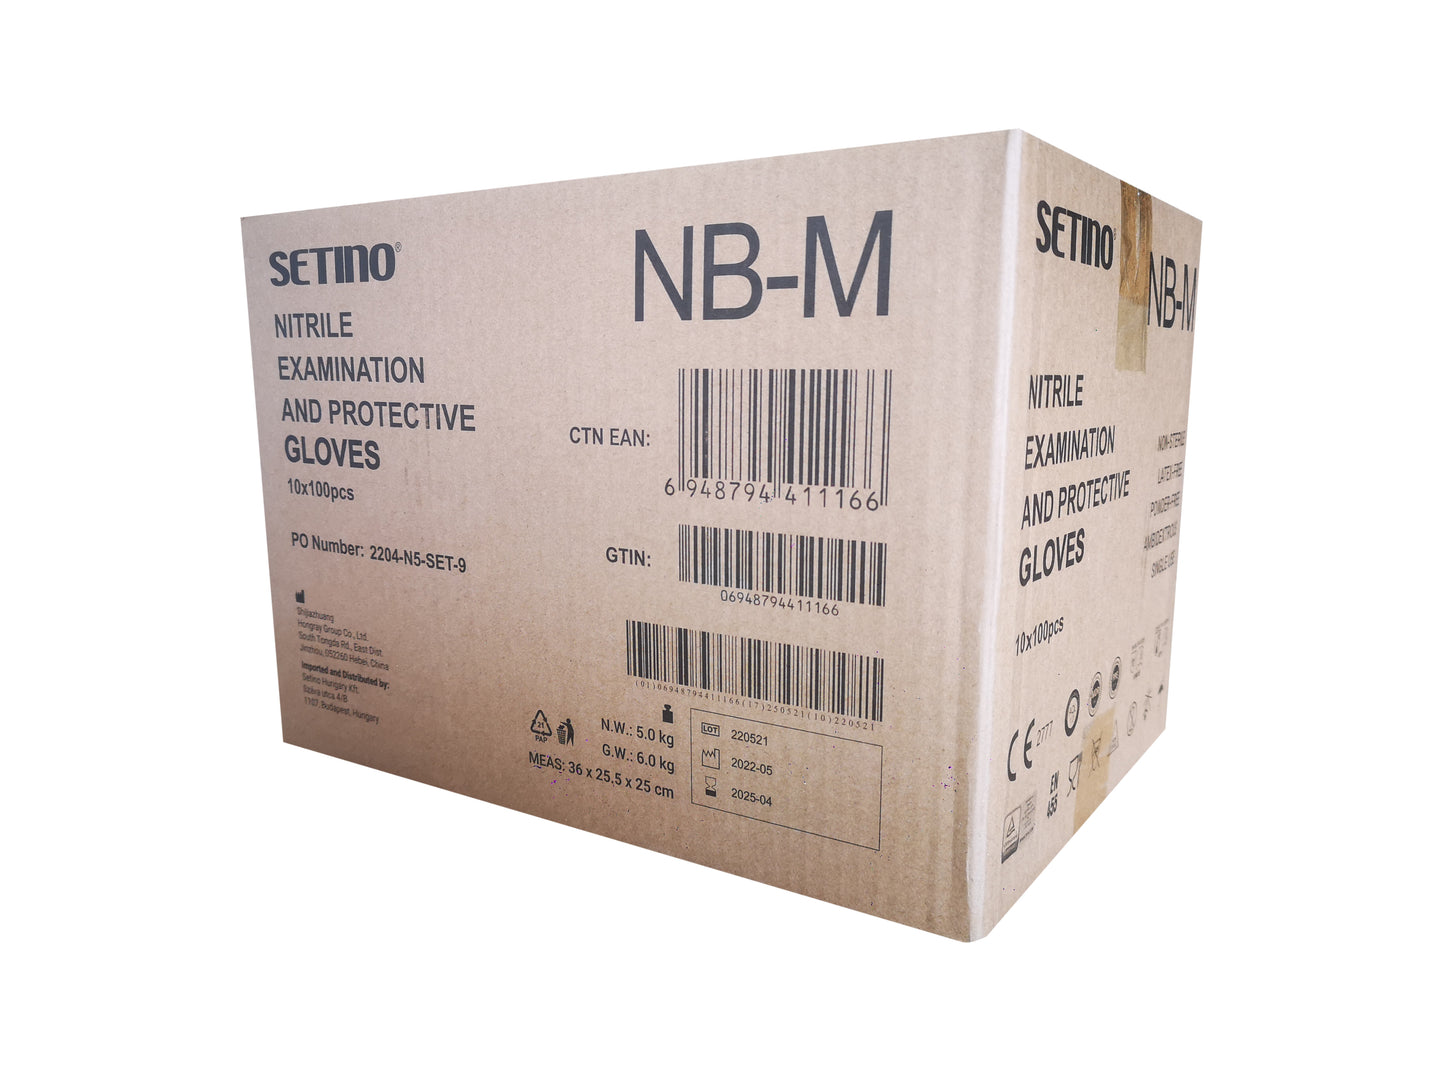 NPF4001-4005 Guanto da esplorazione e protezione in nitrile senza polvere nero 5 grammi